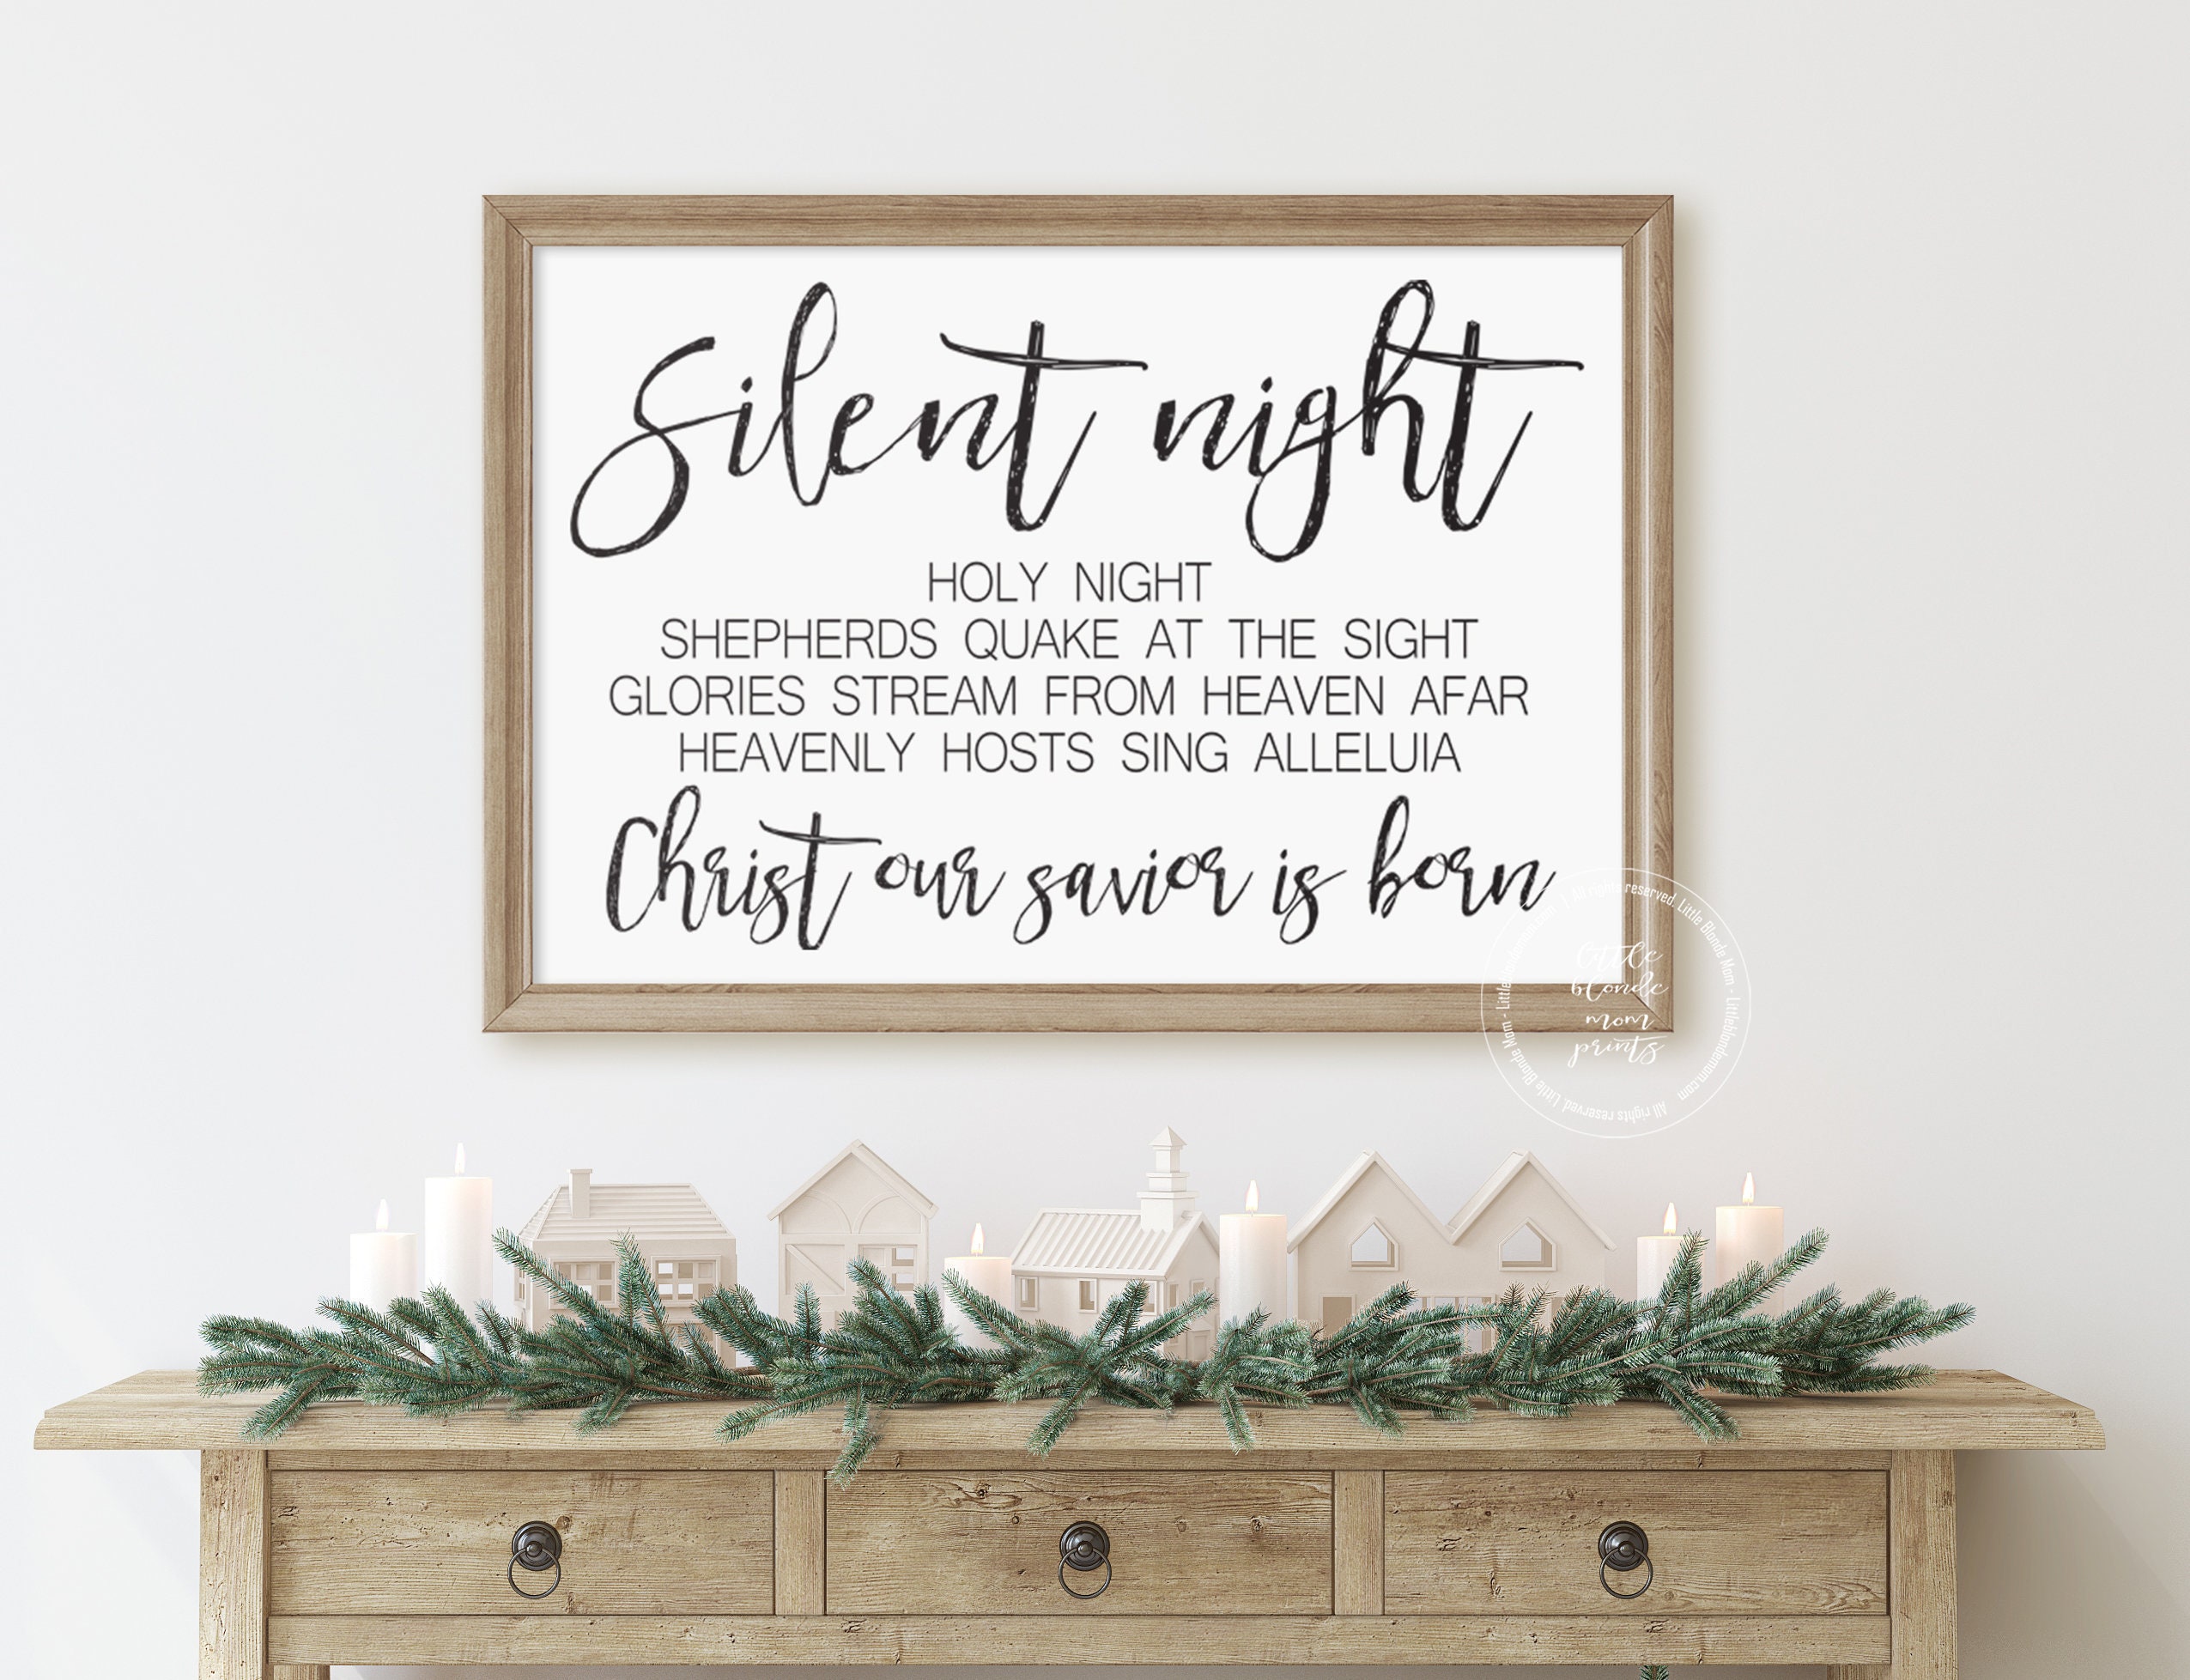 Silent Night Christmas Carol Lyrics Poster (Teacher-Made)